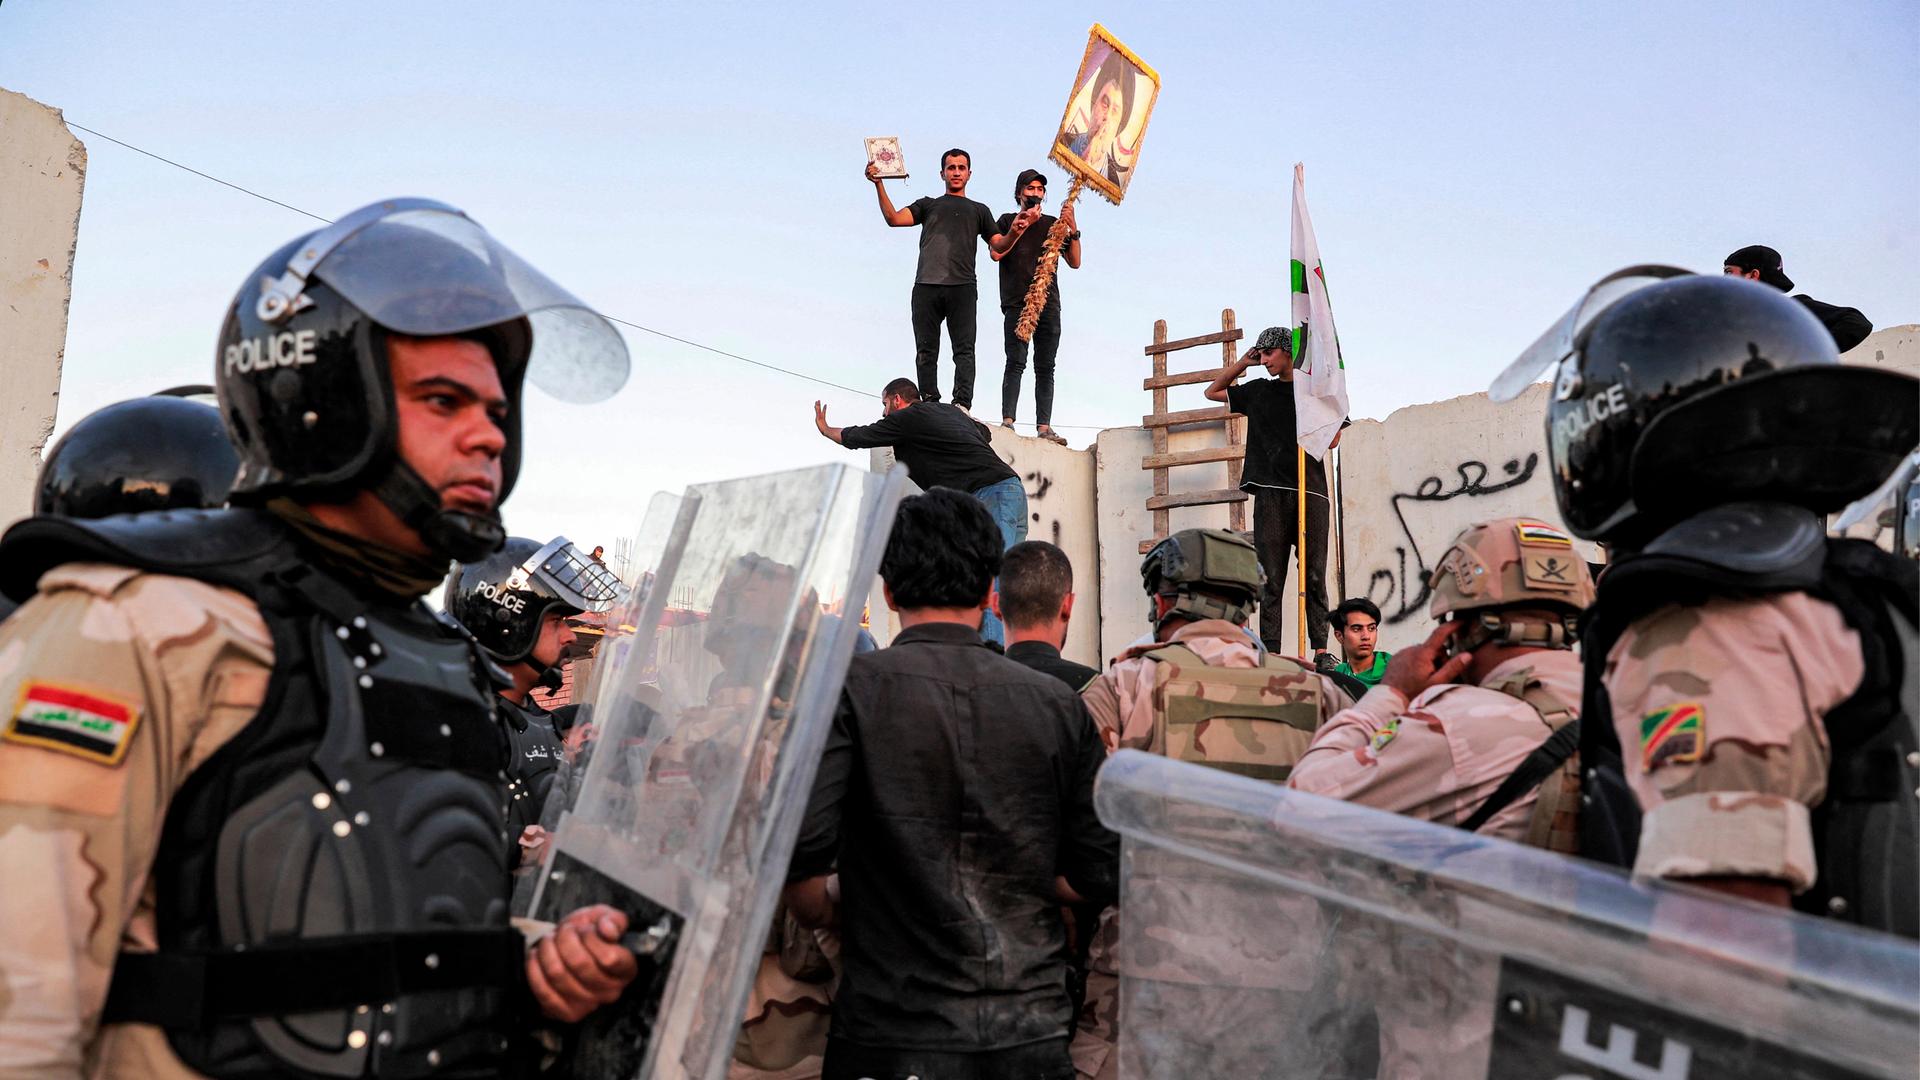 Protestierende Männer mit einem Koran stehen auf dem Zaun der schwedischen Botschaft in Bagdad. Uniformierte Polizeibeamte versuchen die Menschen zu zerstreuen.